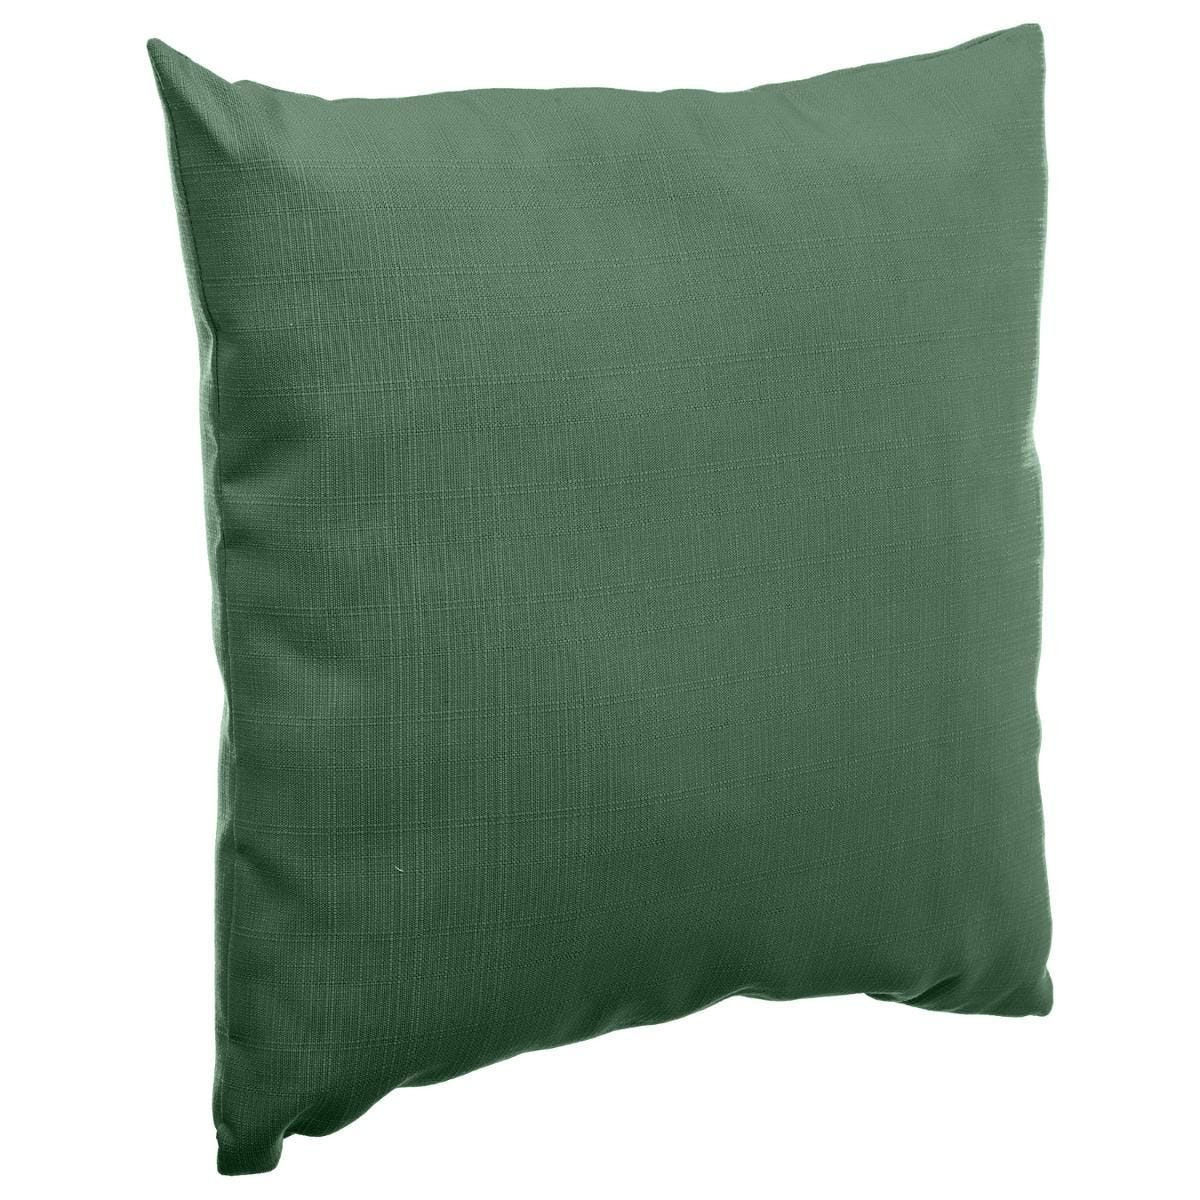 Bank-sier-tuin kussens voor binnen en buiten in de kleur olijf groen 40 x 40 x 10 cm